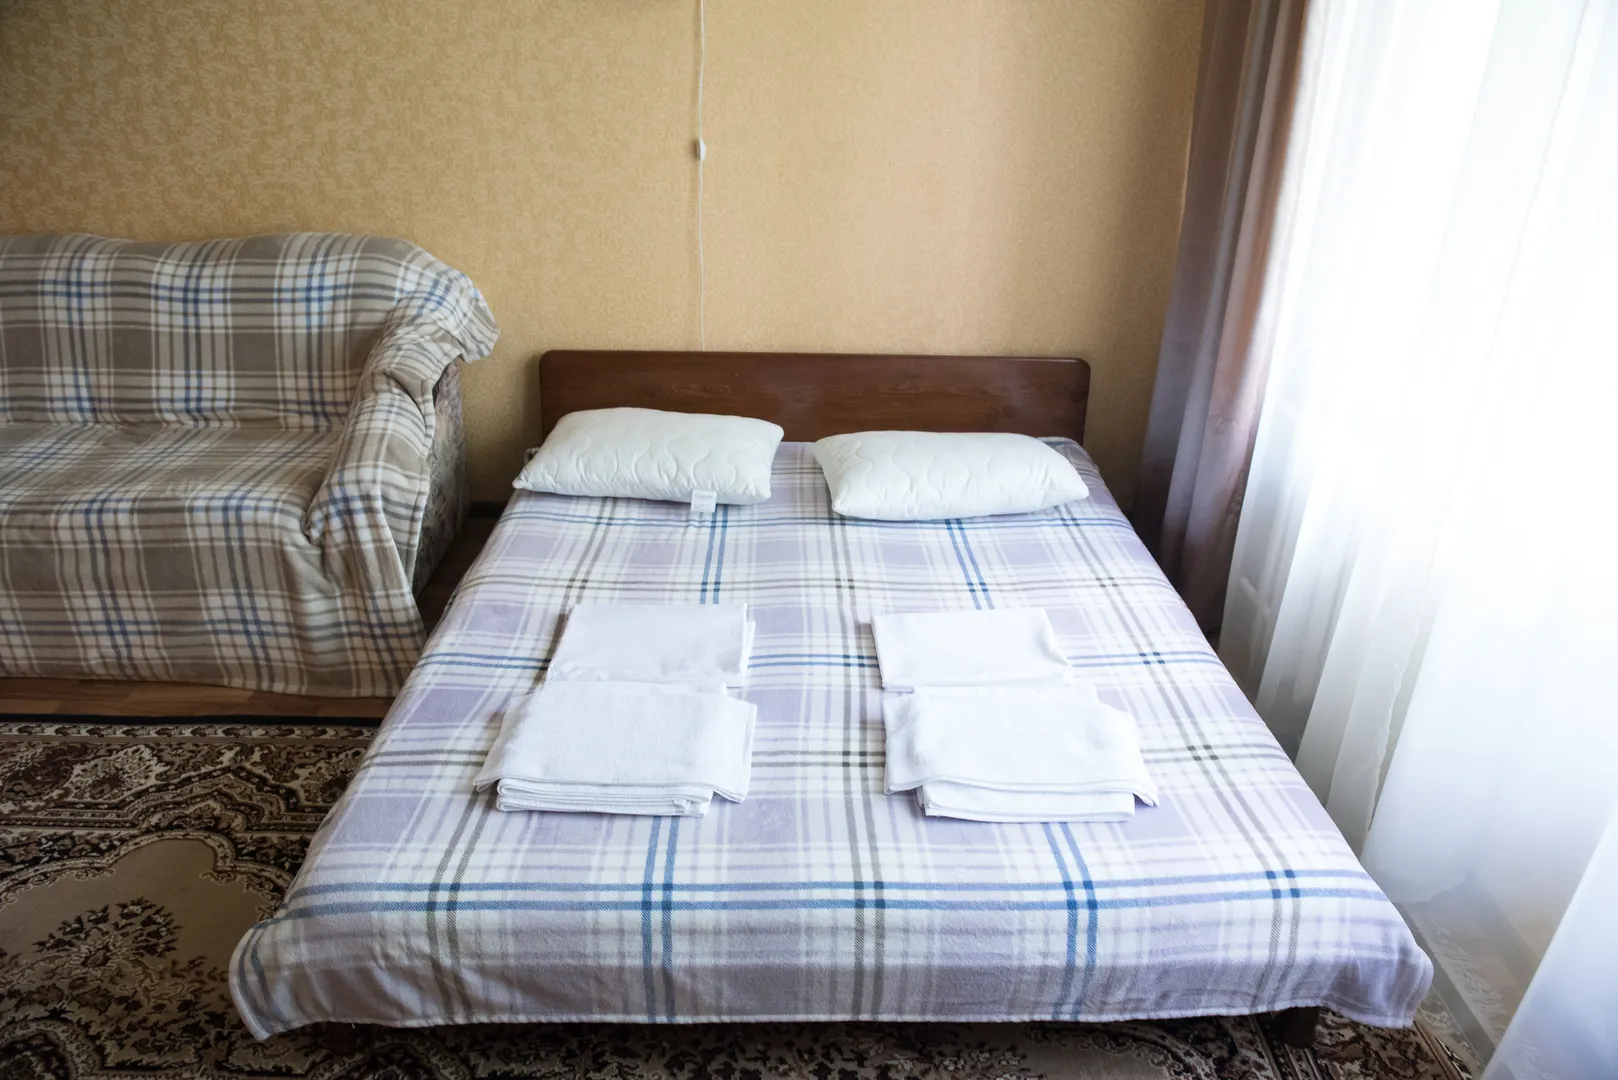 Спальня: двуспальная кровать, крупный план, белое постельное белье, розетки и светильники у каждого спального места